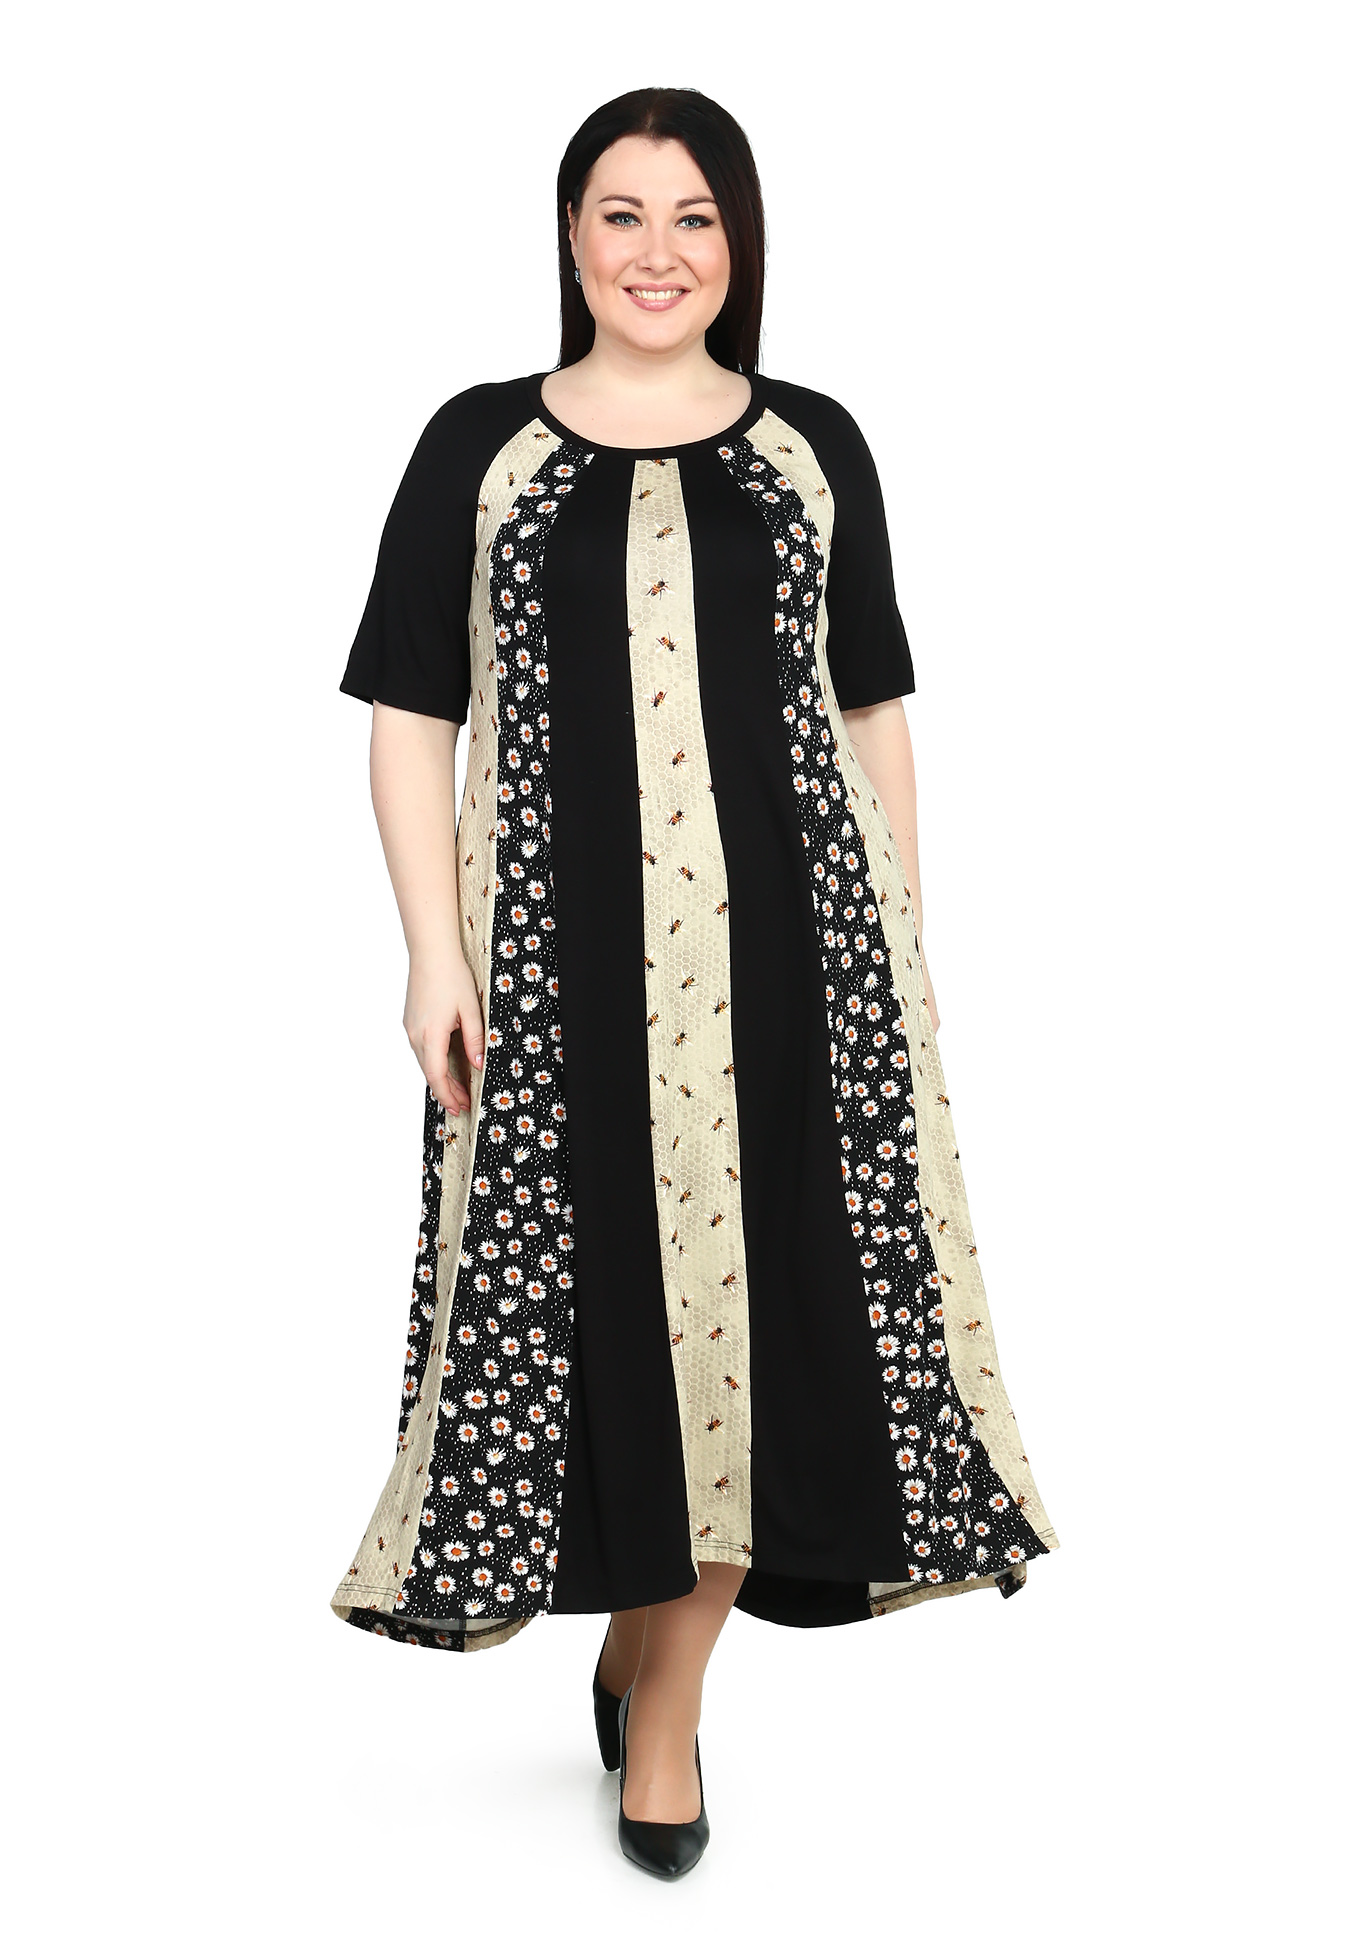 Платье-макси с комбинированным принтом Averi, размер 50, цвет черно-бежевый - фото 1